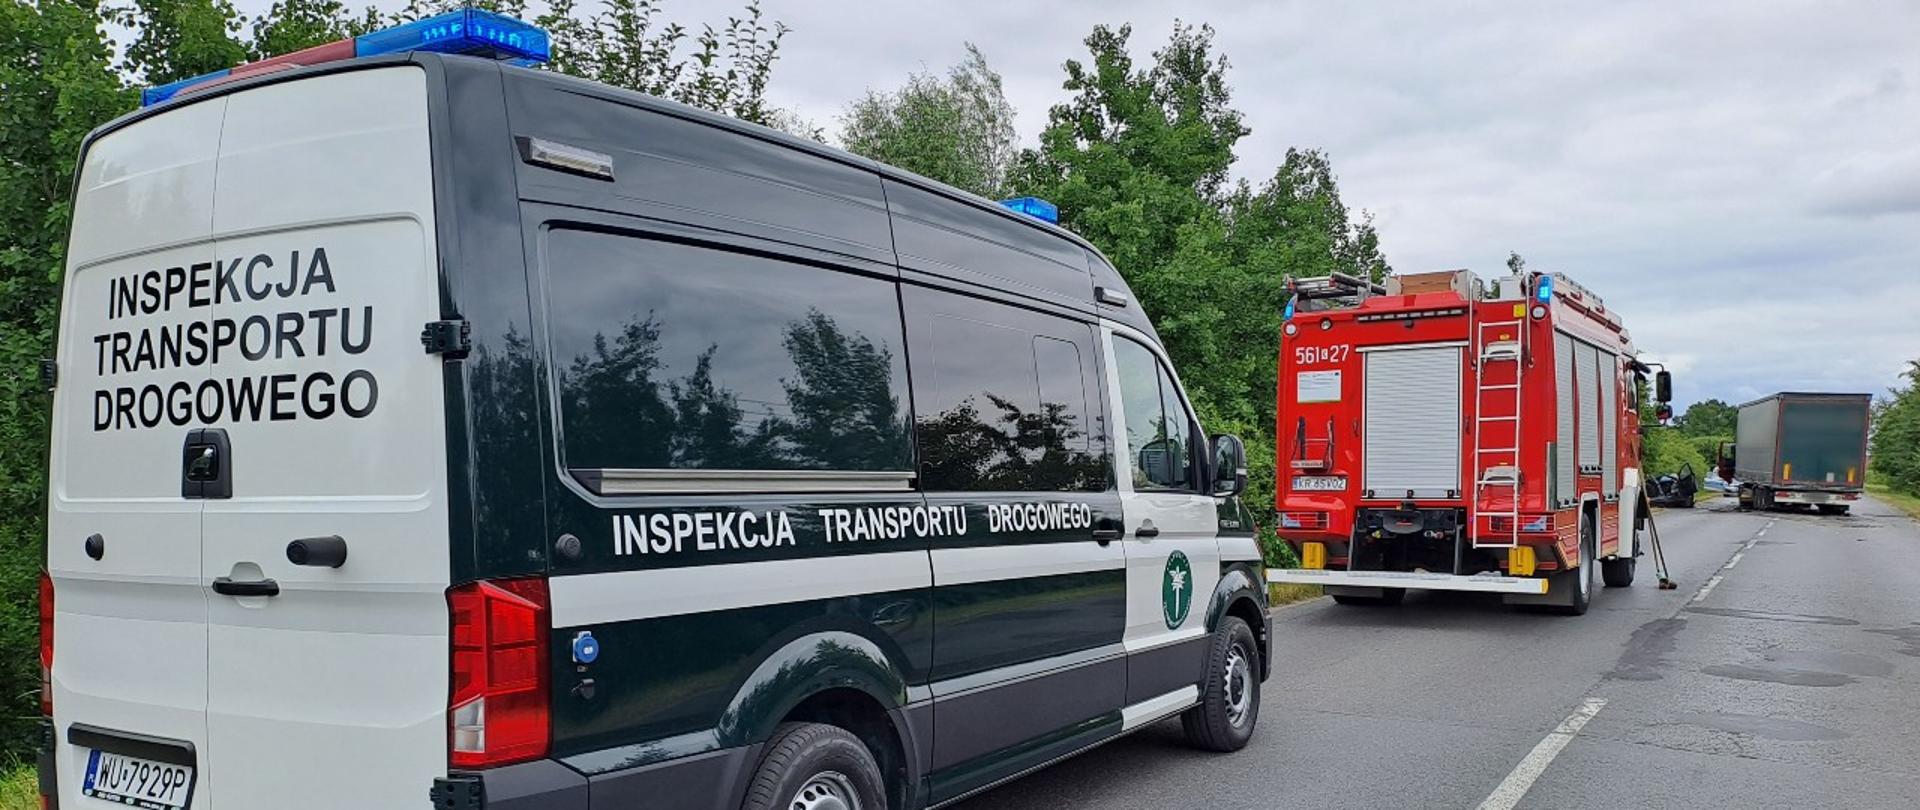 Patrol małopolskiej Inspekcji Transportu Drogowego na miejscu śmiertelnego wypadku z udziałem samochodu osobowego i ciężarowego w Niepołomicach.